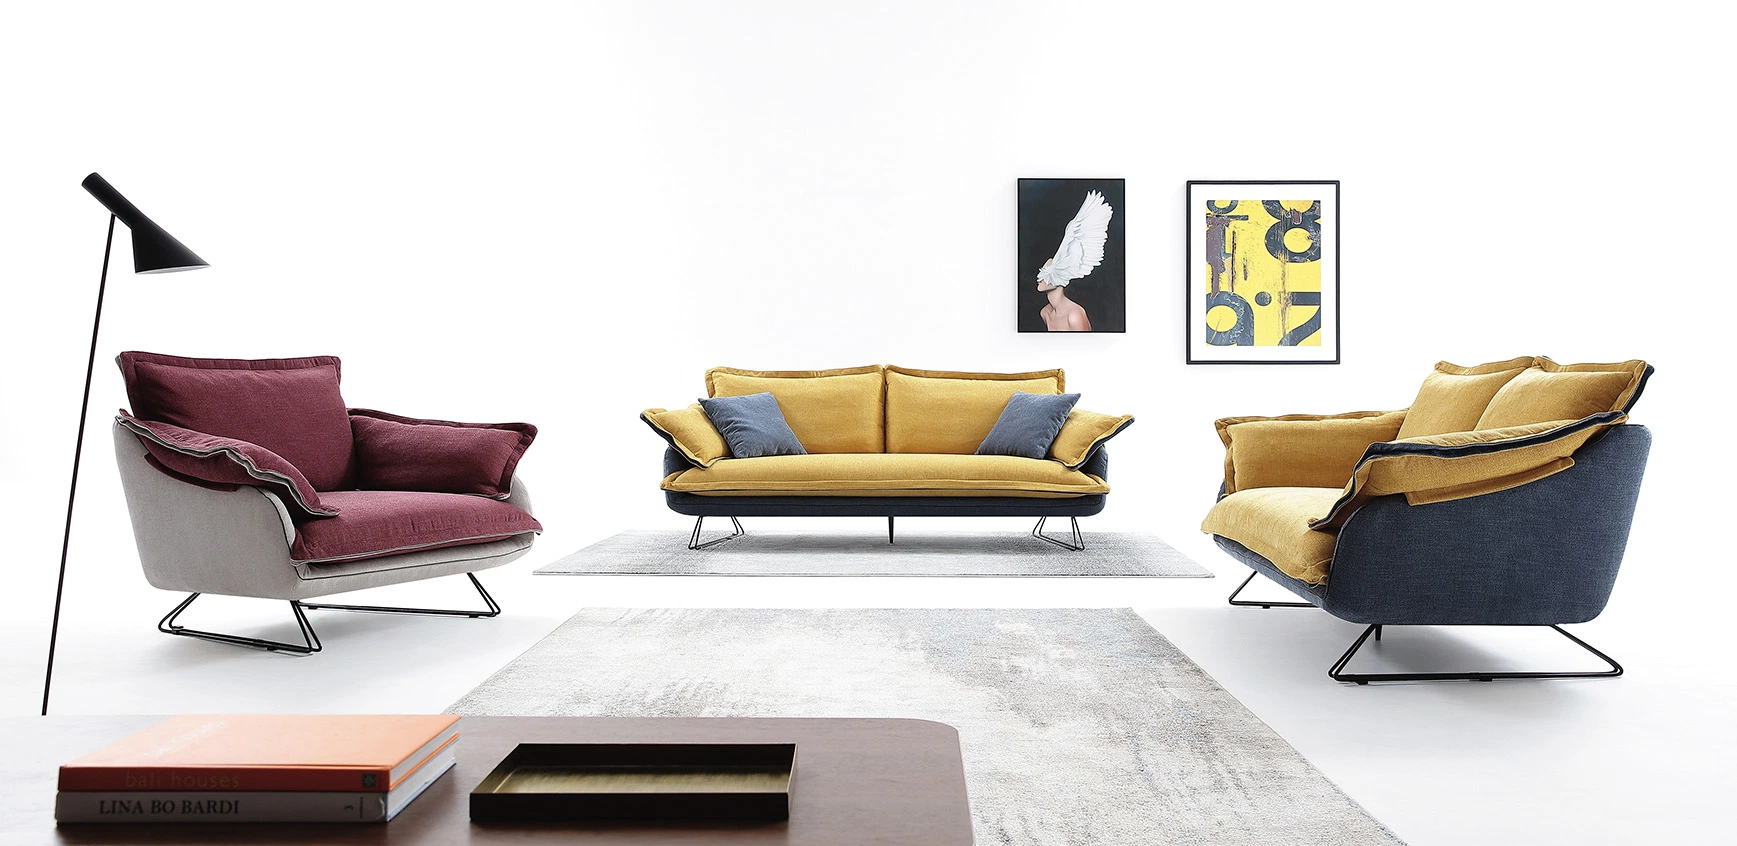 1+2+3 moderno sofá de cuero tejido simple Ocio sillones para Living y muebles Home